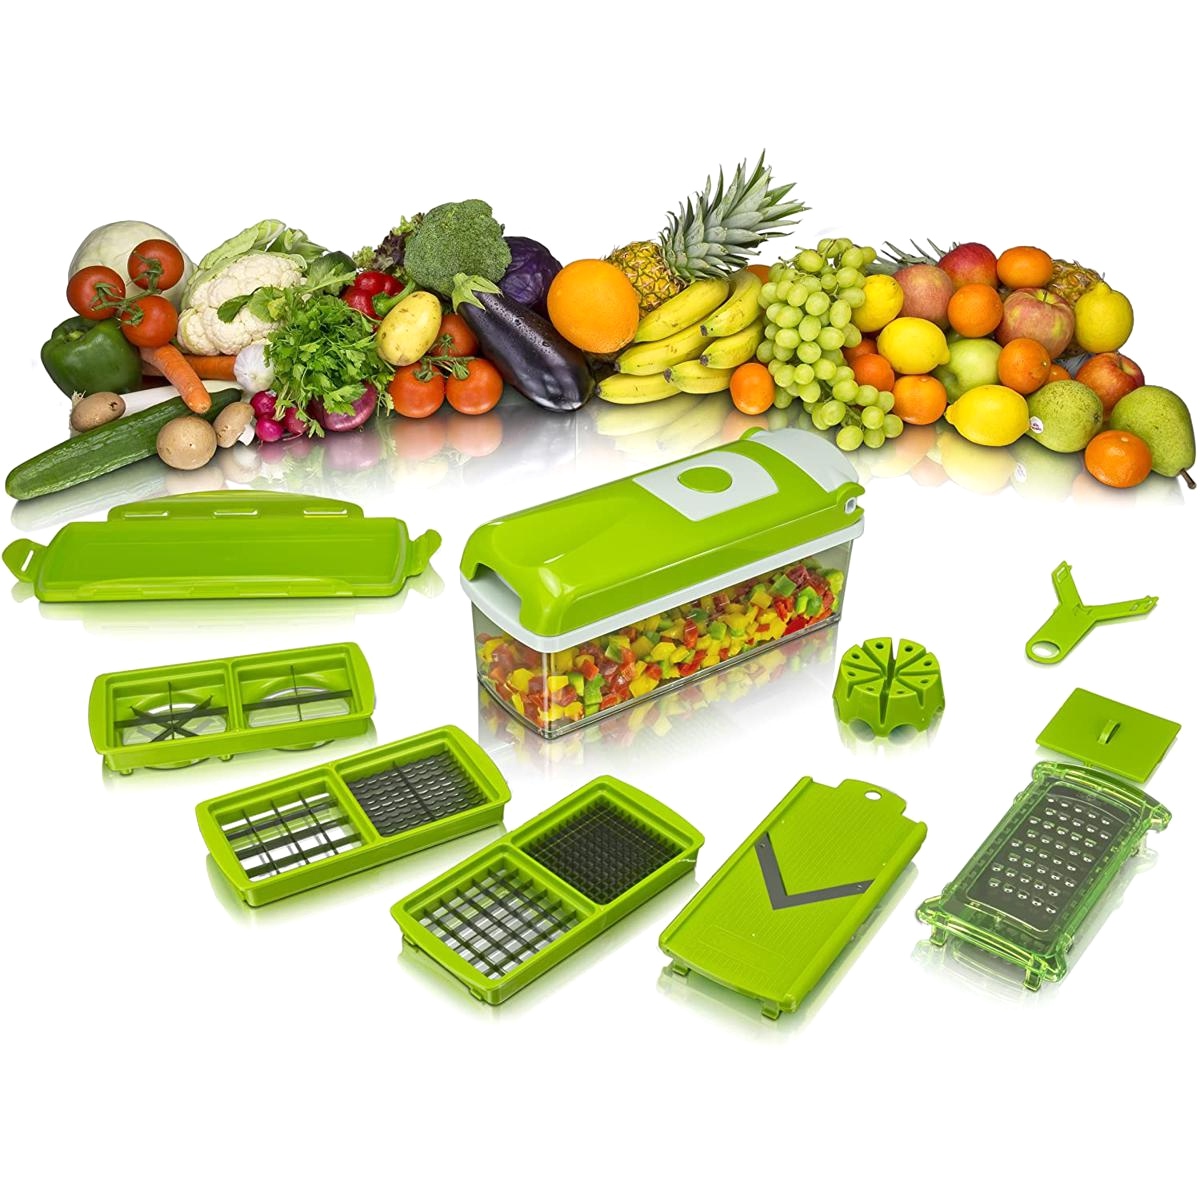 Фото 2 Многофункциональная овощерезка-шинковка UFT VC4 терка для овощей и фруктов с контейнером + 5 насадок